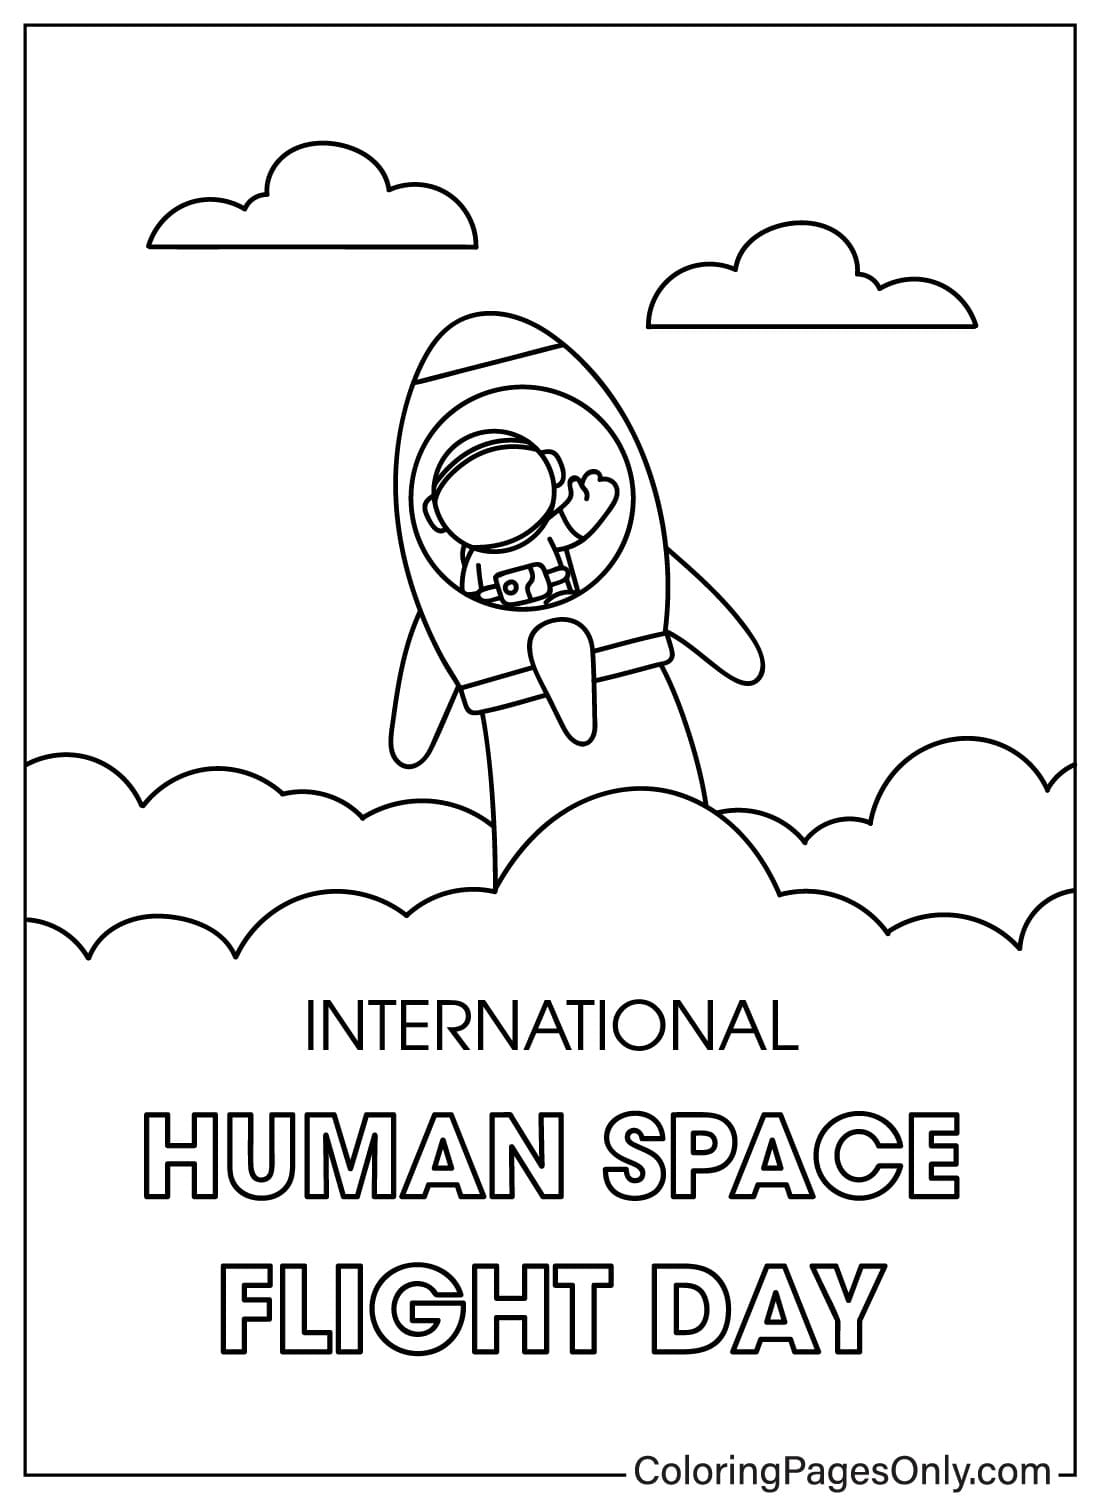 Imagens coloridas do Dia Internacional do Voo Espacial Humano do Dia Internacional do Voo Espacial Humano